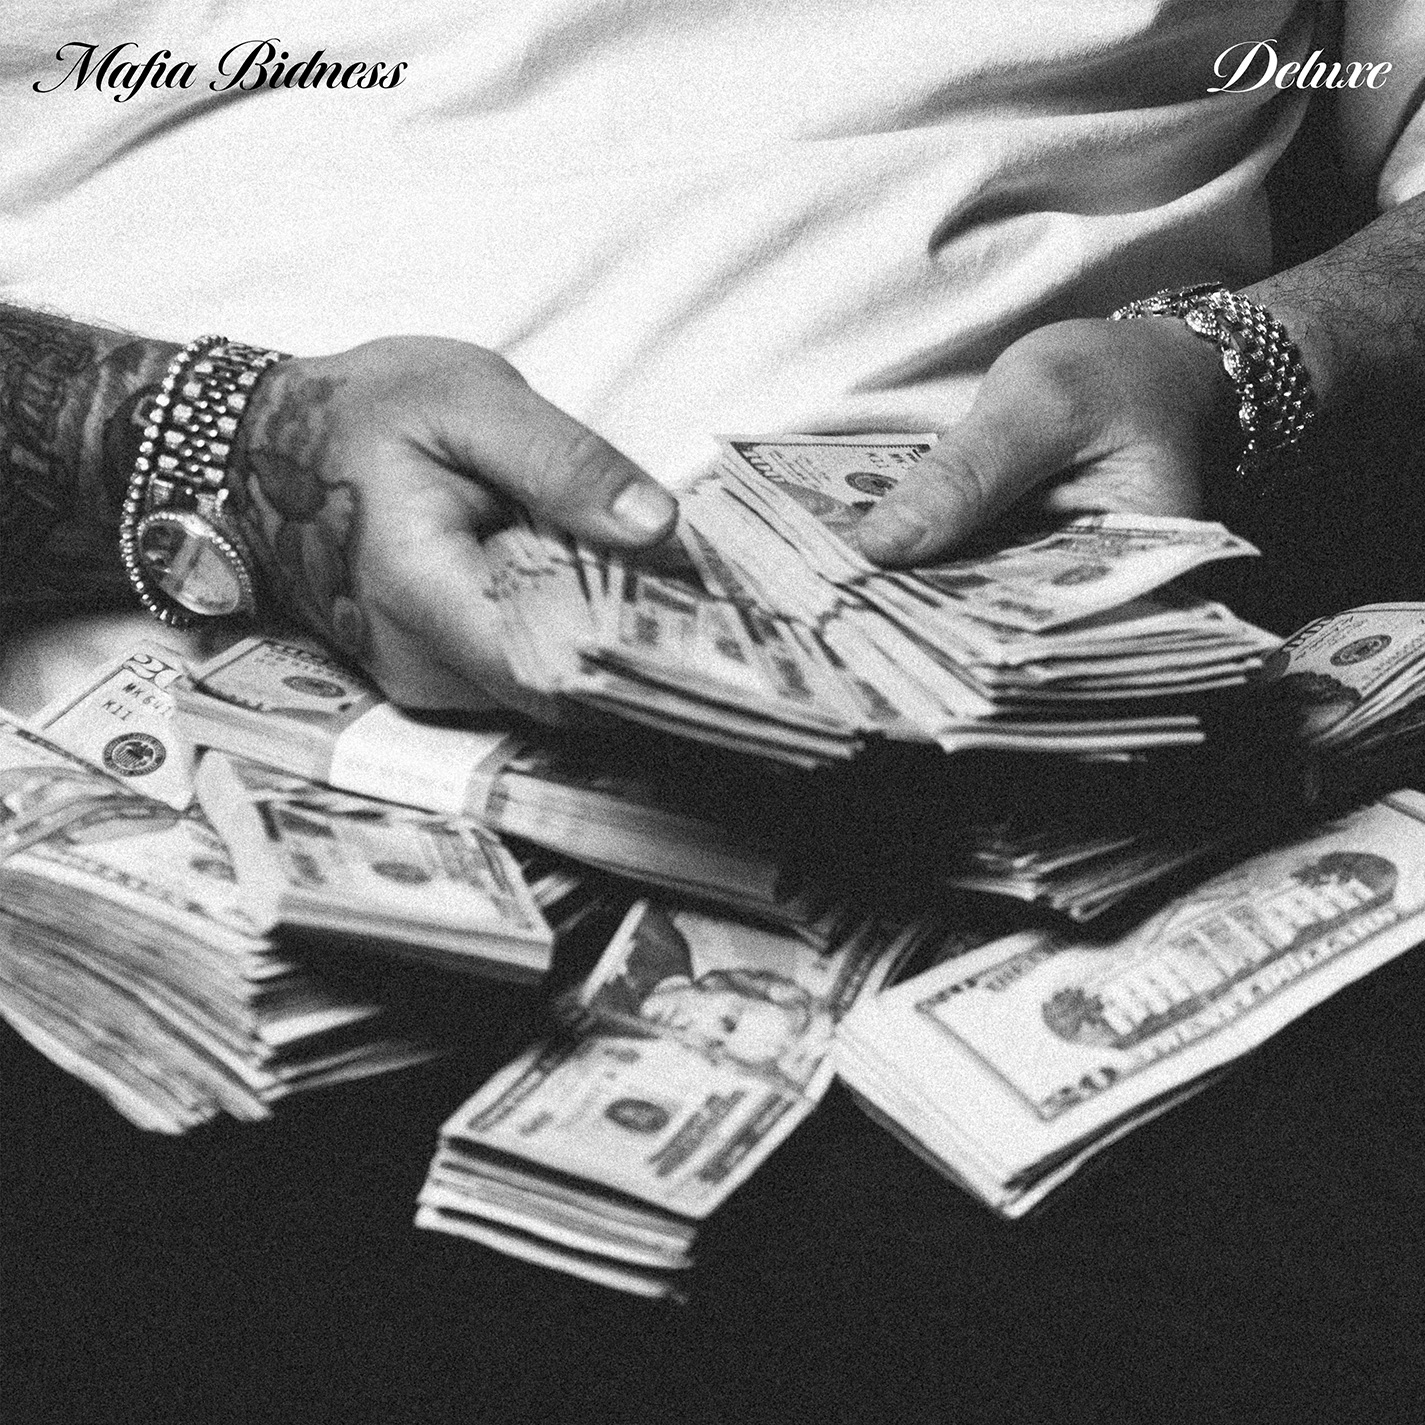 Shoreline Mafia - Mafia Bidness (Deluxe)